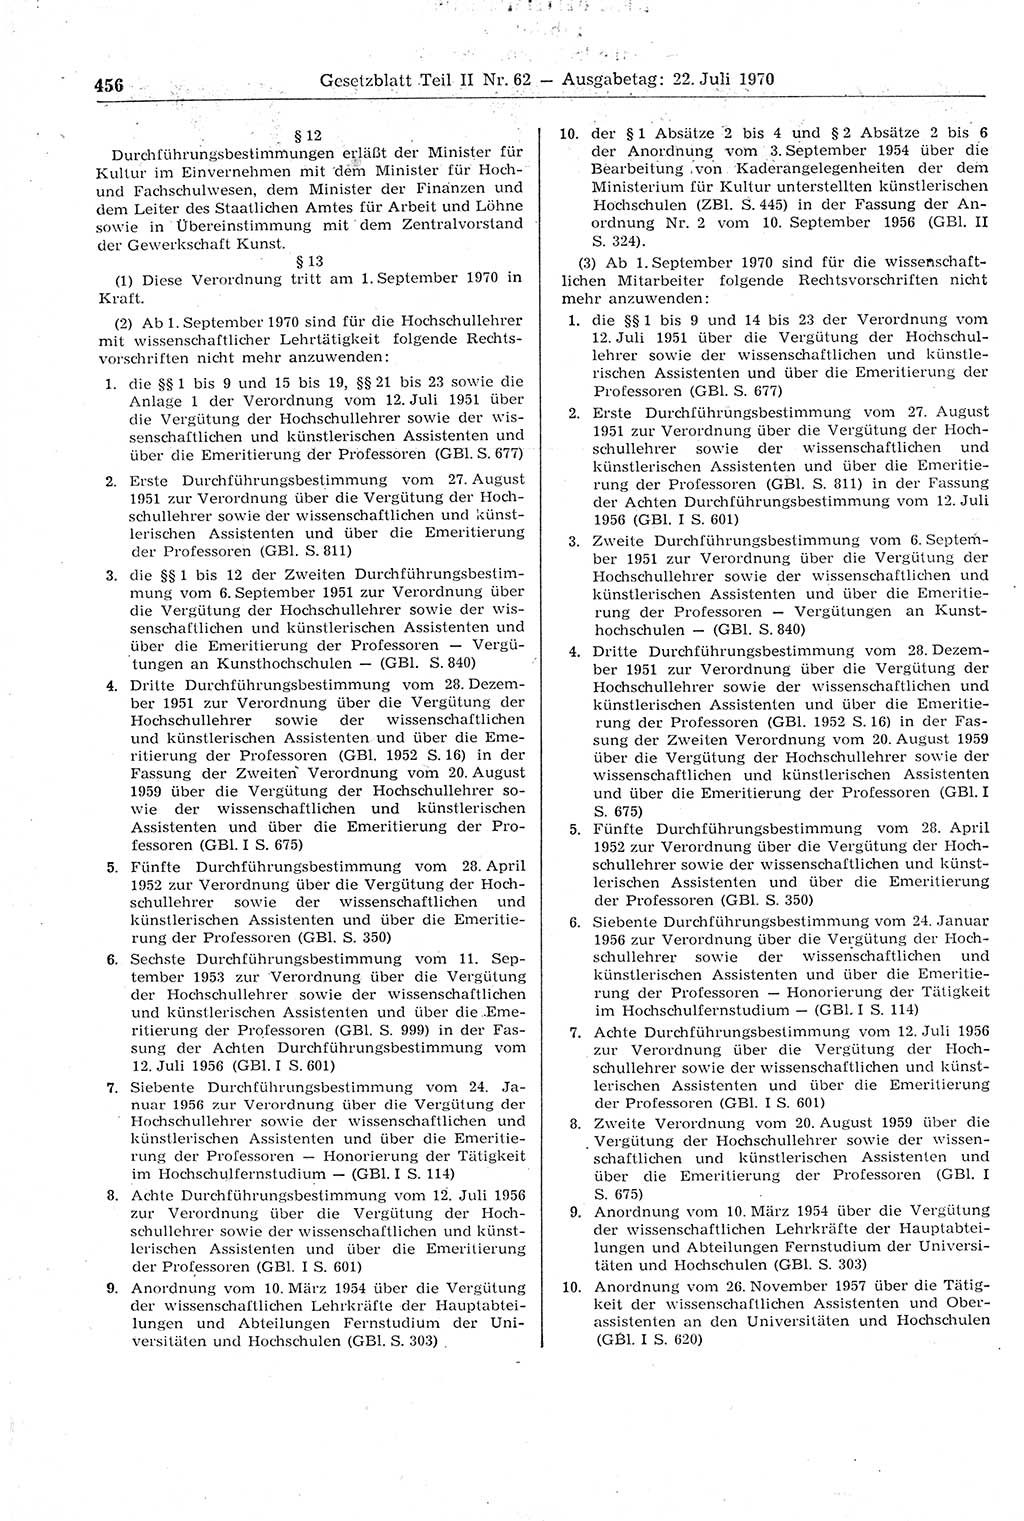 Gesetzblatt (GBl.) der Deutschen Demokratischen Republik (DDR) Teil ⅠⅠ 1970, Seite 456 (GBl. DDR ⅠⅠ 1970, S. 456)